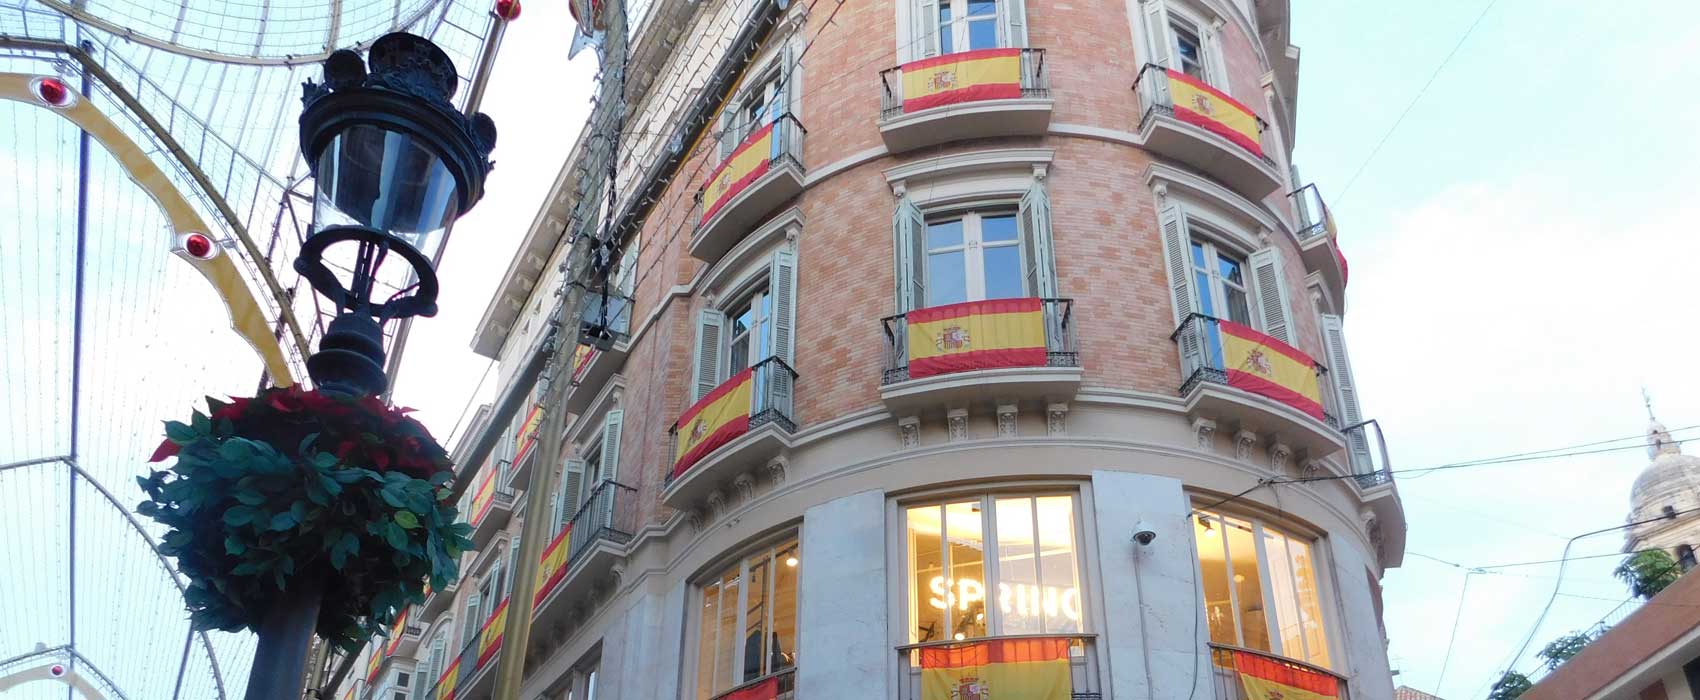 Mit spanischen Flaggen geschmückte Häuserfassade